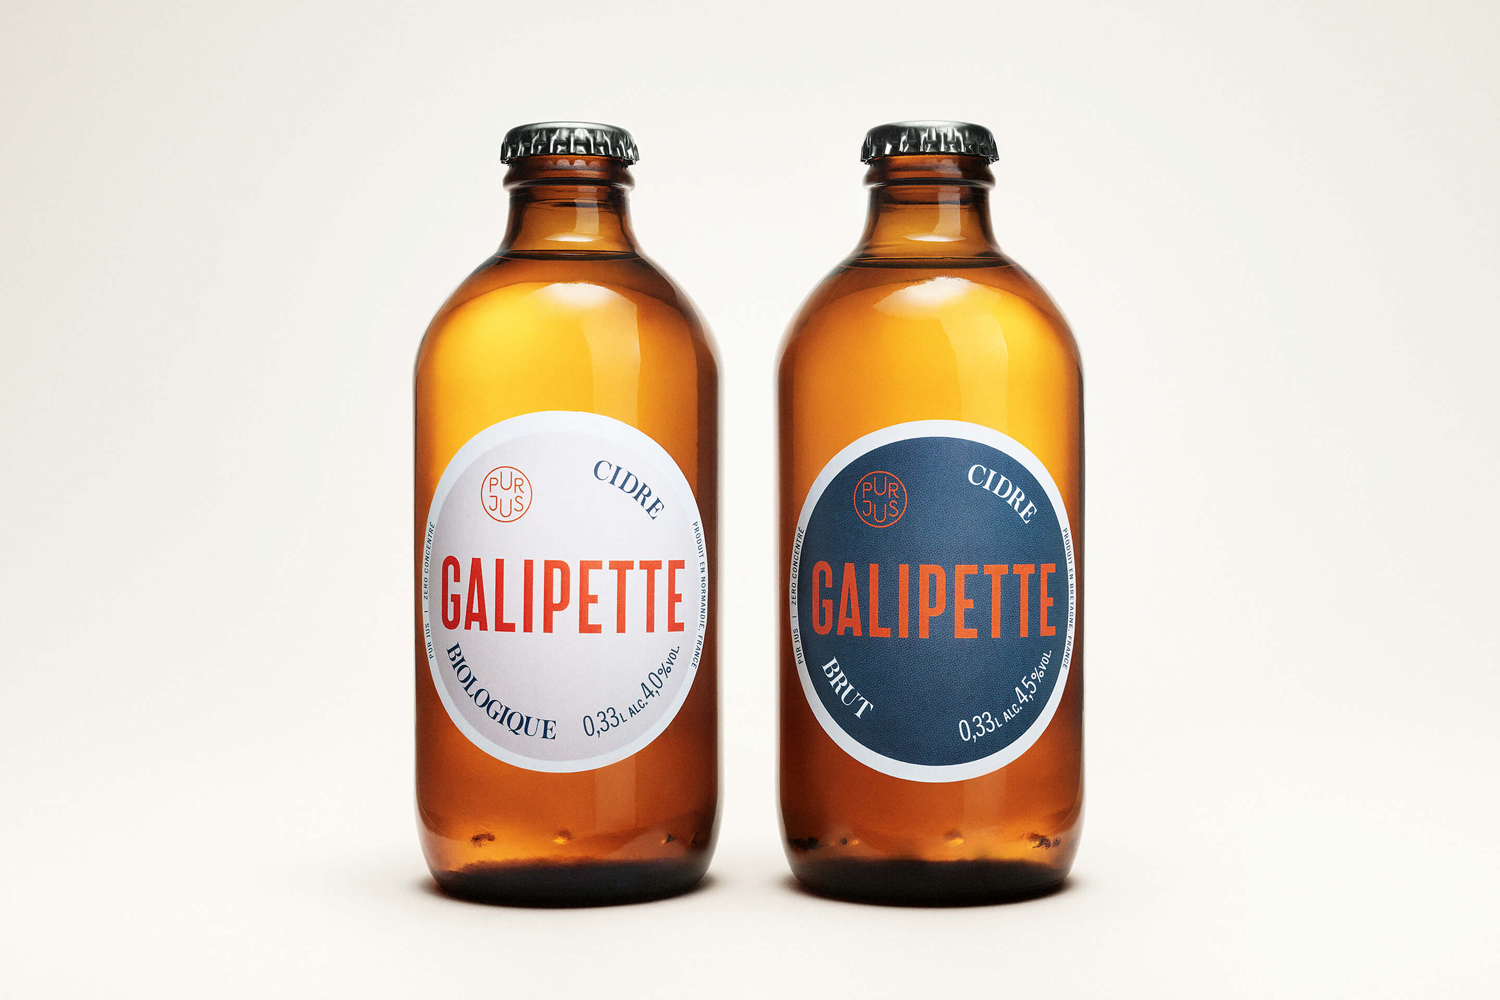 Scandinavian Packaging Design – Galipette Cidre by Werklig, Finland